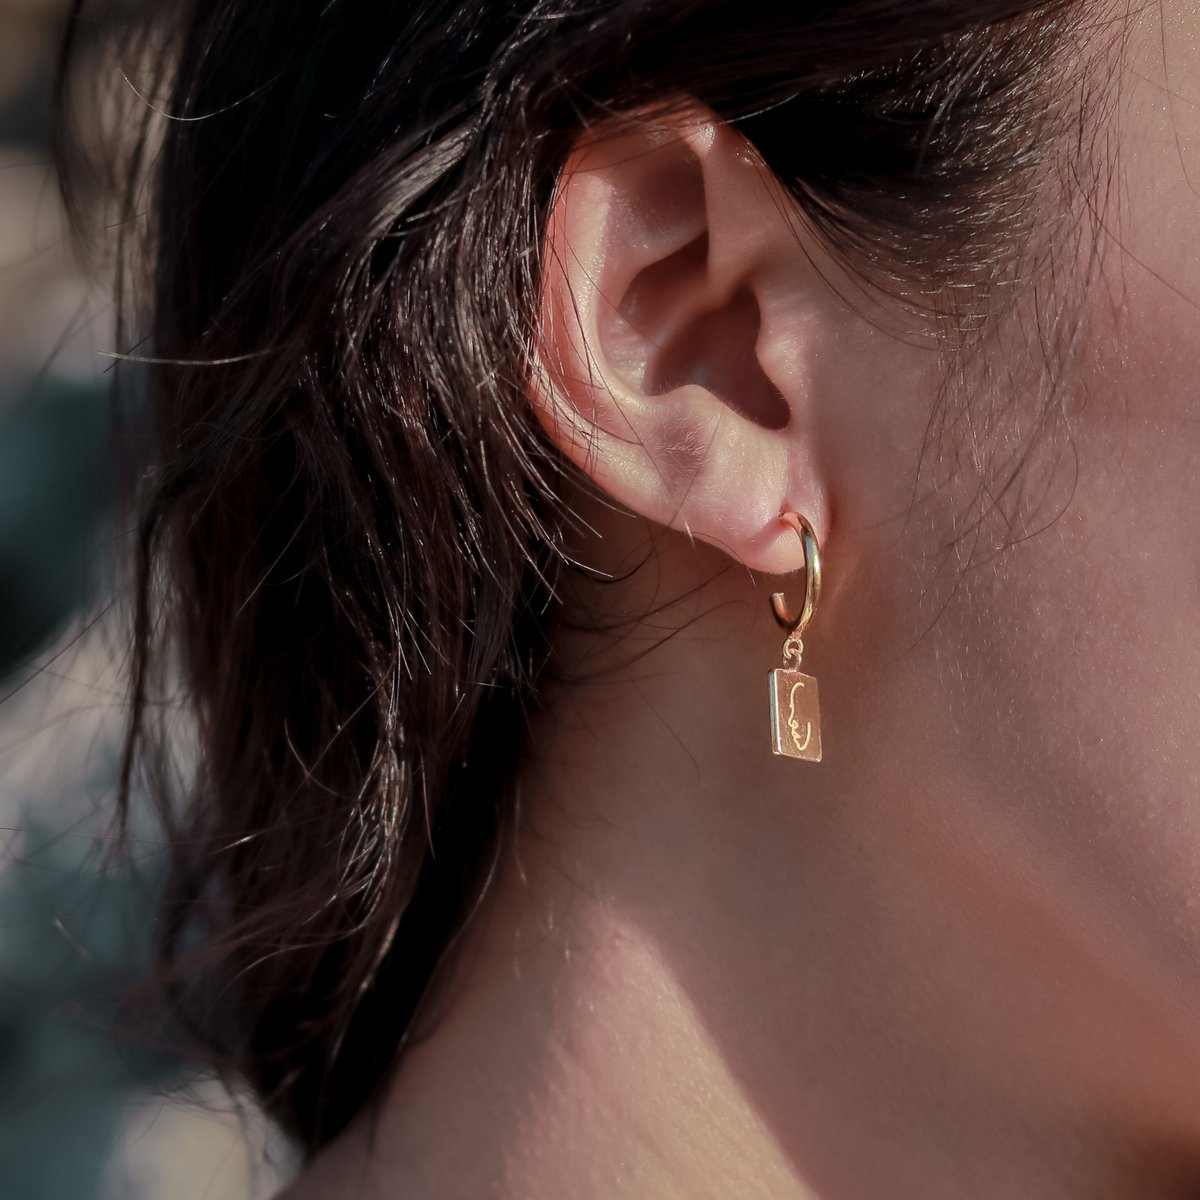 Boucles d'oreilles plaquées or 18 carats avec pendentif - créoles ornées d'un visage gravé - boucles d'oreilles pendantes en argent 925 or vermeil - KARTINI gold